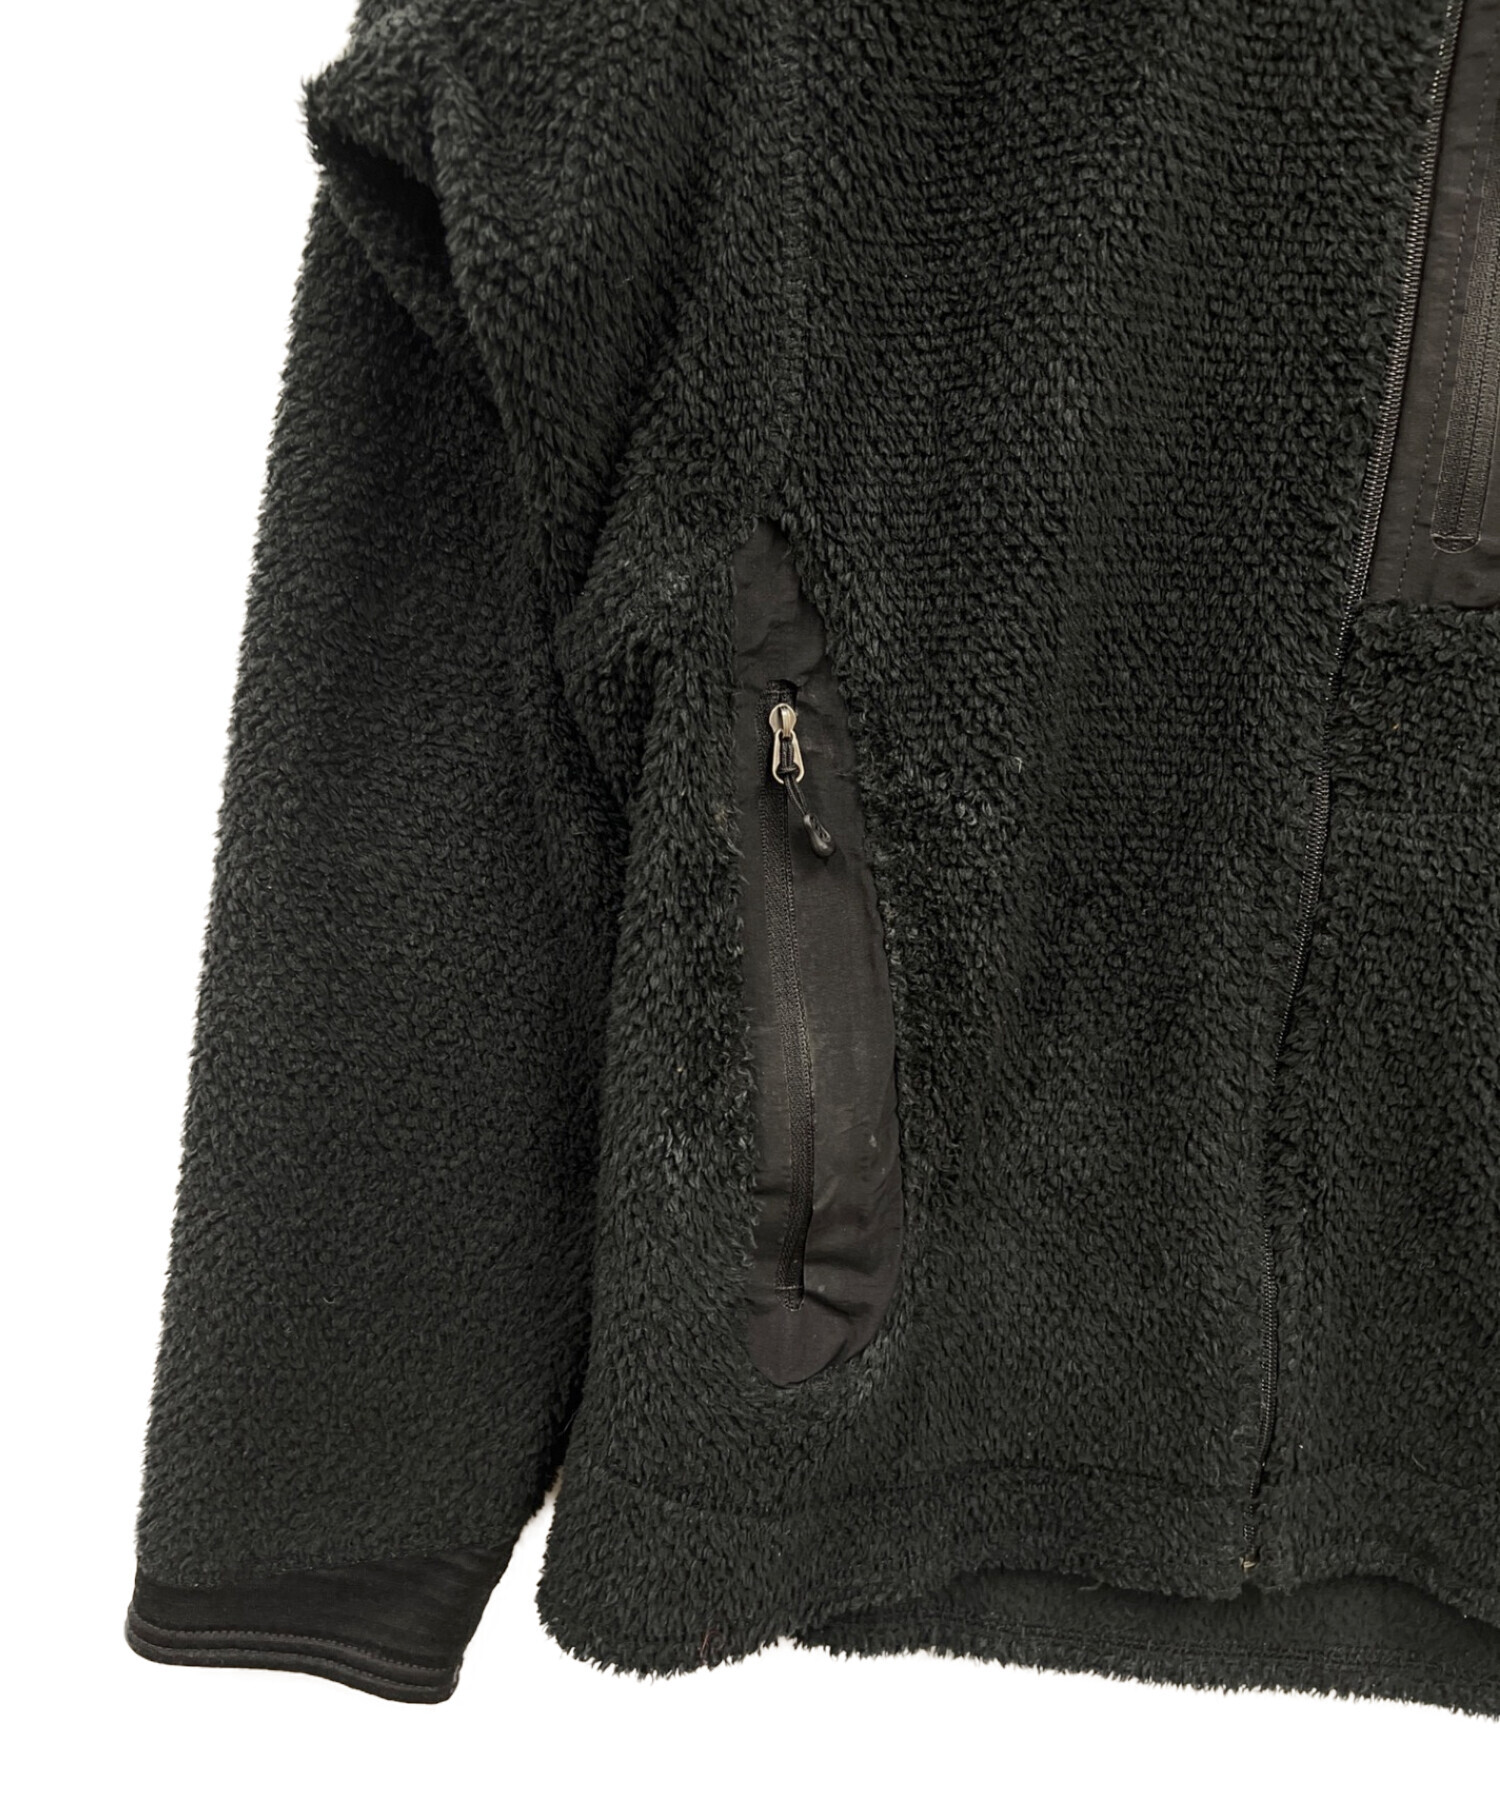 Patagonia (パタゴニア) フリースジャケット ブラック サイズ:M